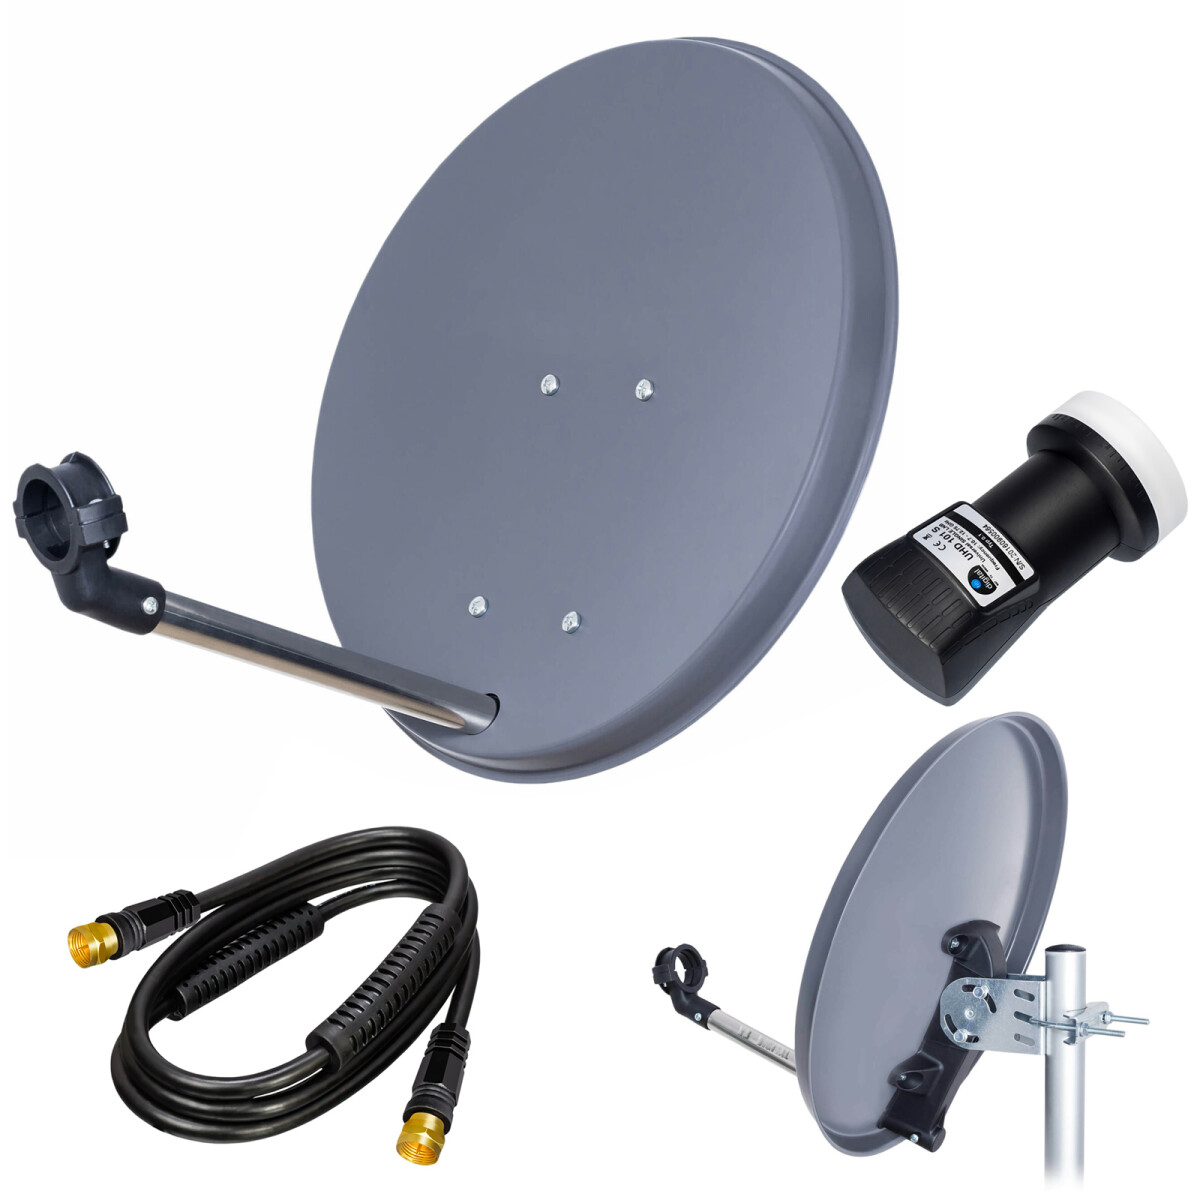 HB-DIGITAL Prise dantenne pour télévision numérique DVB-C et antenne TV DVB-T2 IEC mâle pour câble dantenne coaxial dembrayage câble BK Anlagen HQ 4K UHD 